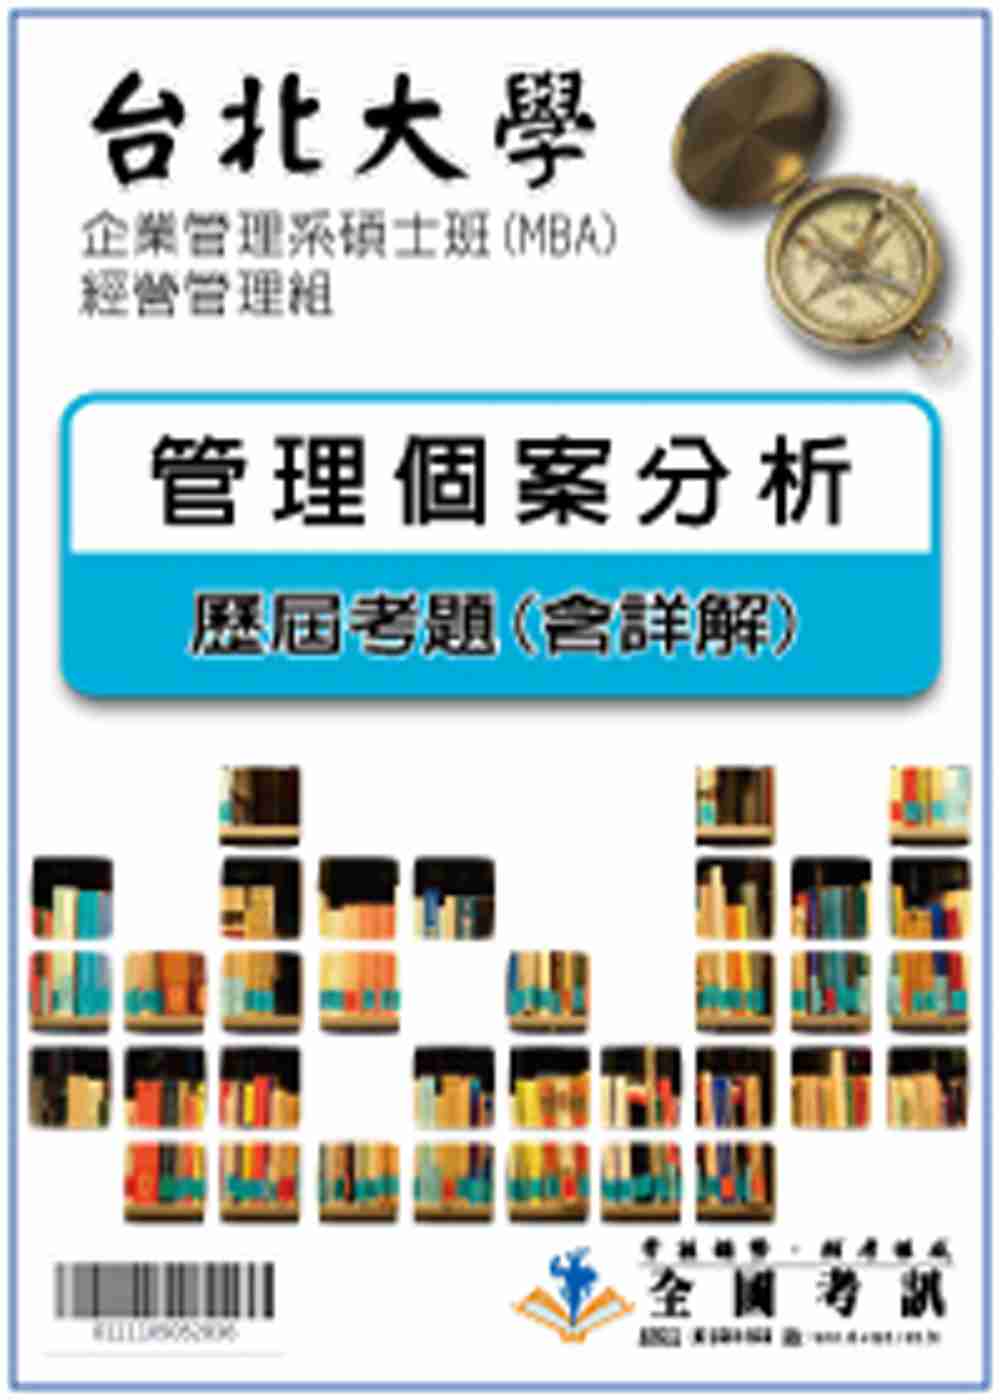 考古題解答-台北大學-企業管理系碩士班(MBA)-經營管理組 科目:管理個案分析98/99/100/101/102/103